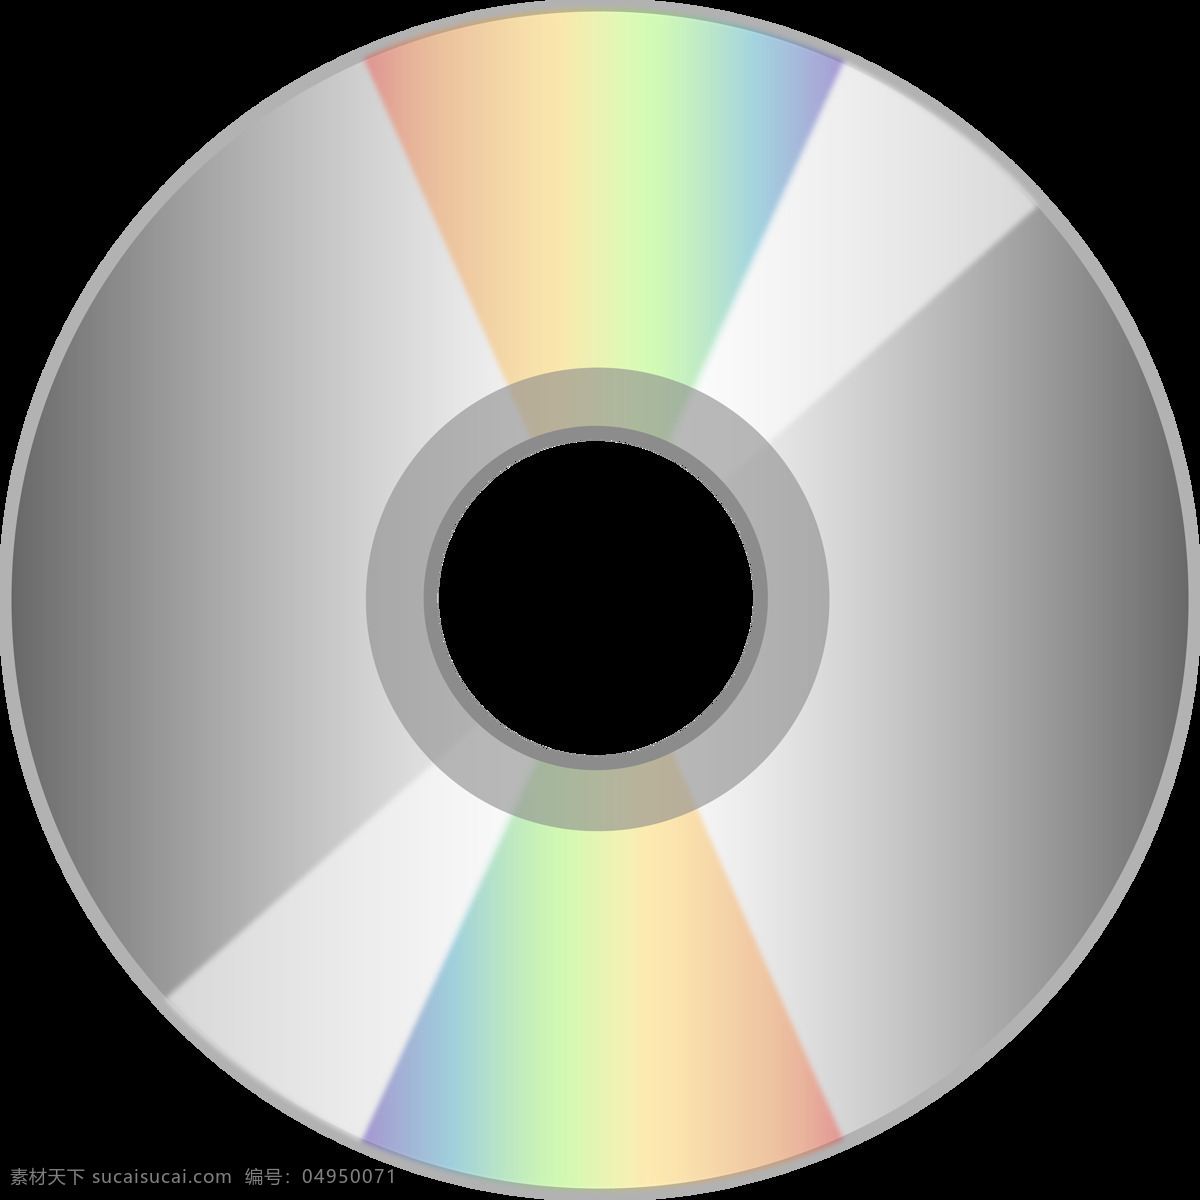 闪亮 dvd 光盘 免 抠 透明 图 层 系统光盘 dvd光盘 游戏光盘 电影光盘 刻录光盘 cd光碟 音乐cd 电影dvd dvd电影 刻录dvd 光盘图片